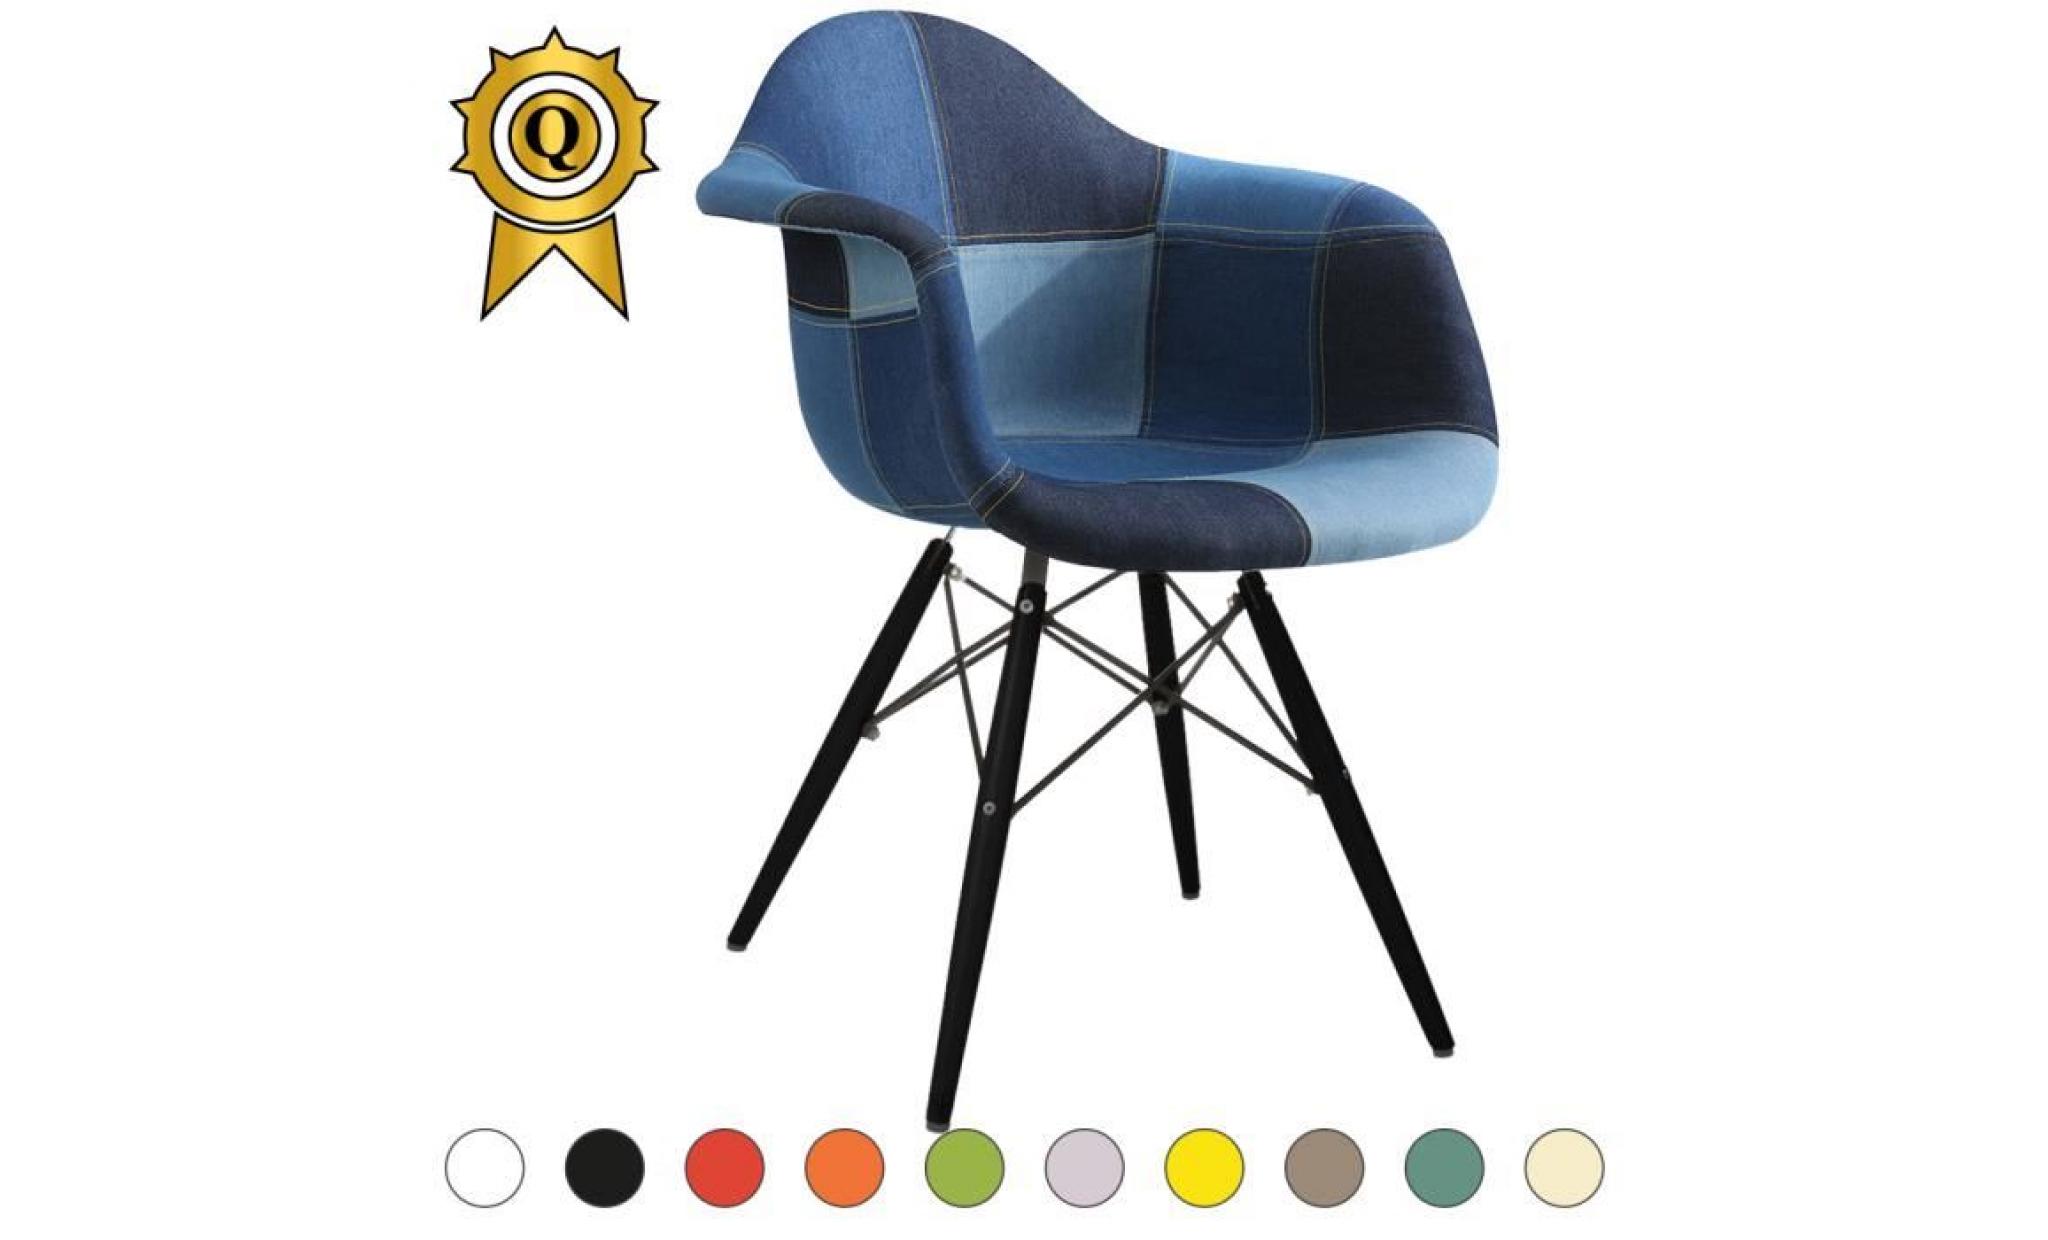 1 x fauteuil design retro inspiration eames daw pieds en bois vernis noyer assise silver mobistyl®